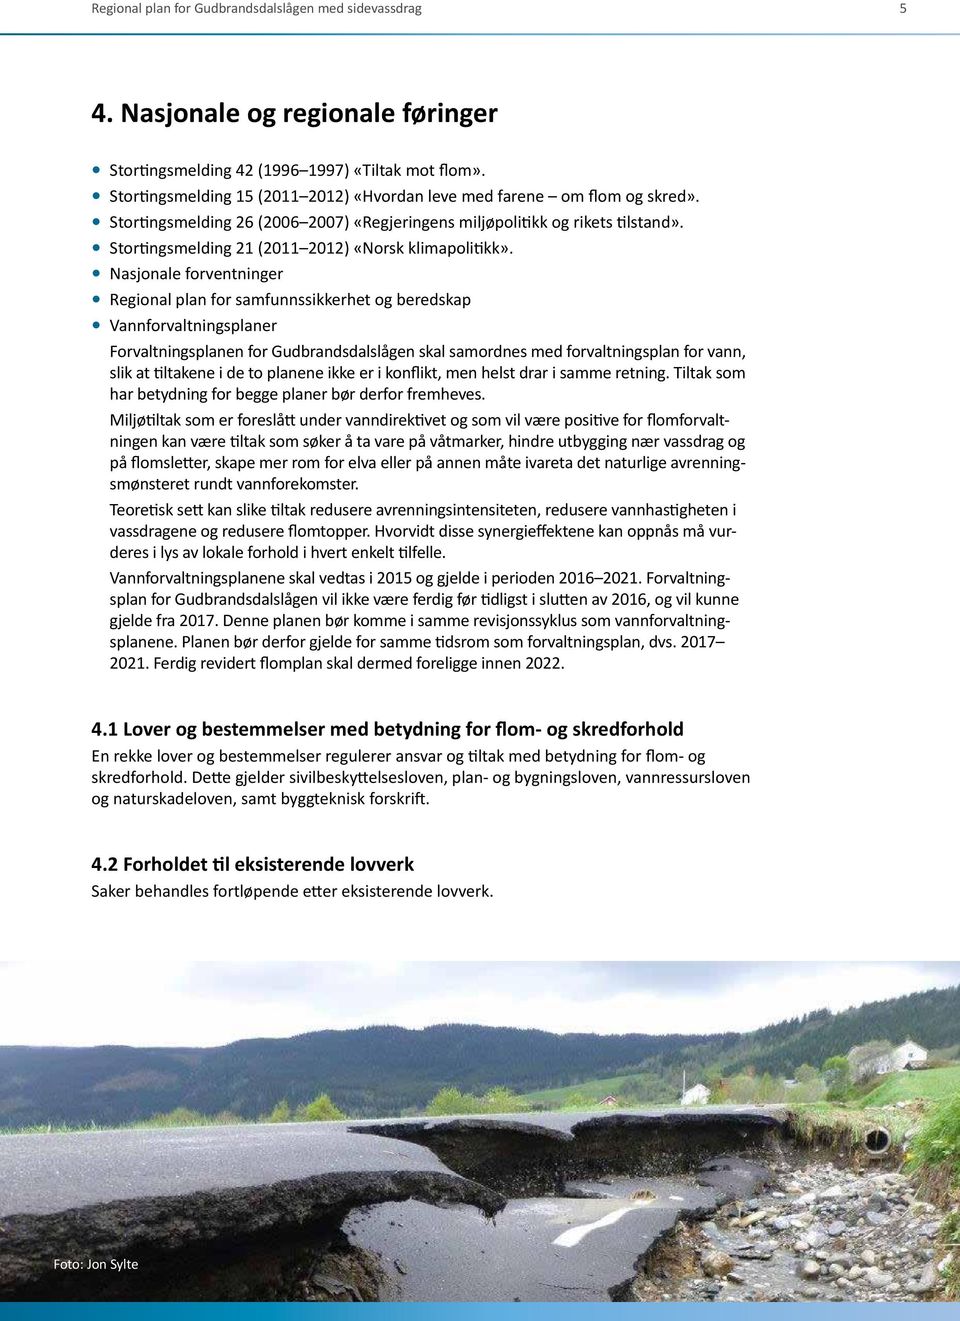 Stortingsmelding 21 (2011 2012) «Norsk klimapolitikk».